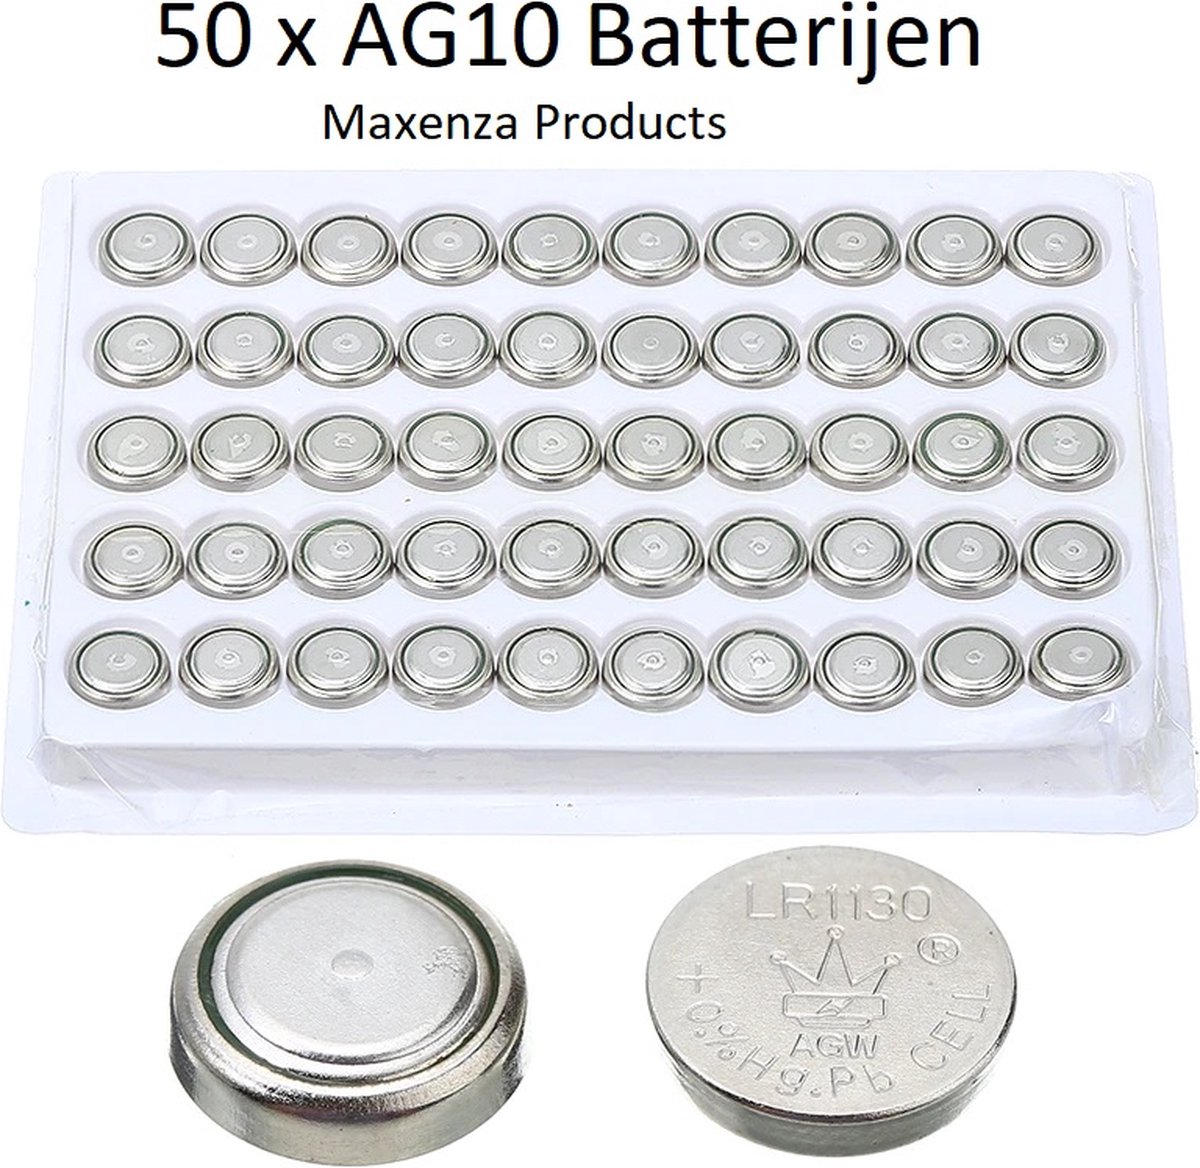 Maxenza Batterij - ag10 batterijen - AG10 - - lr1130 -... |